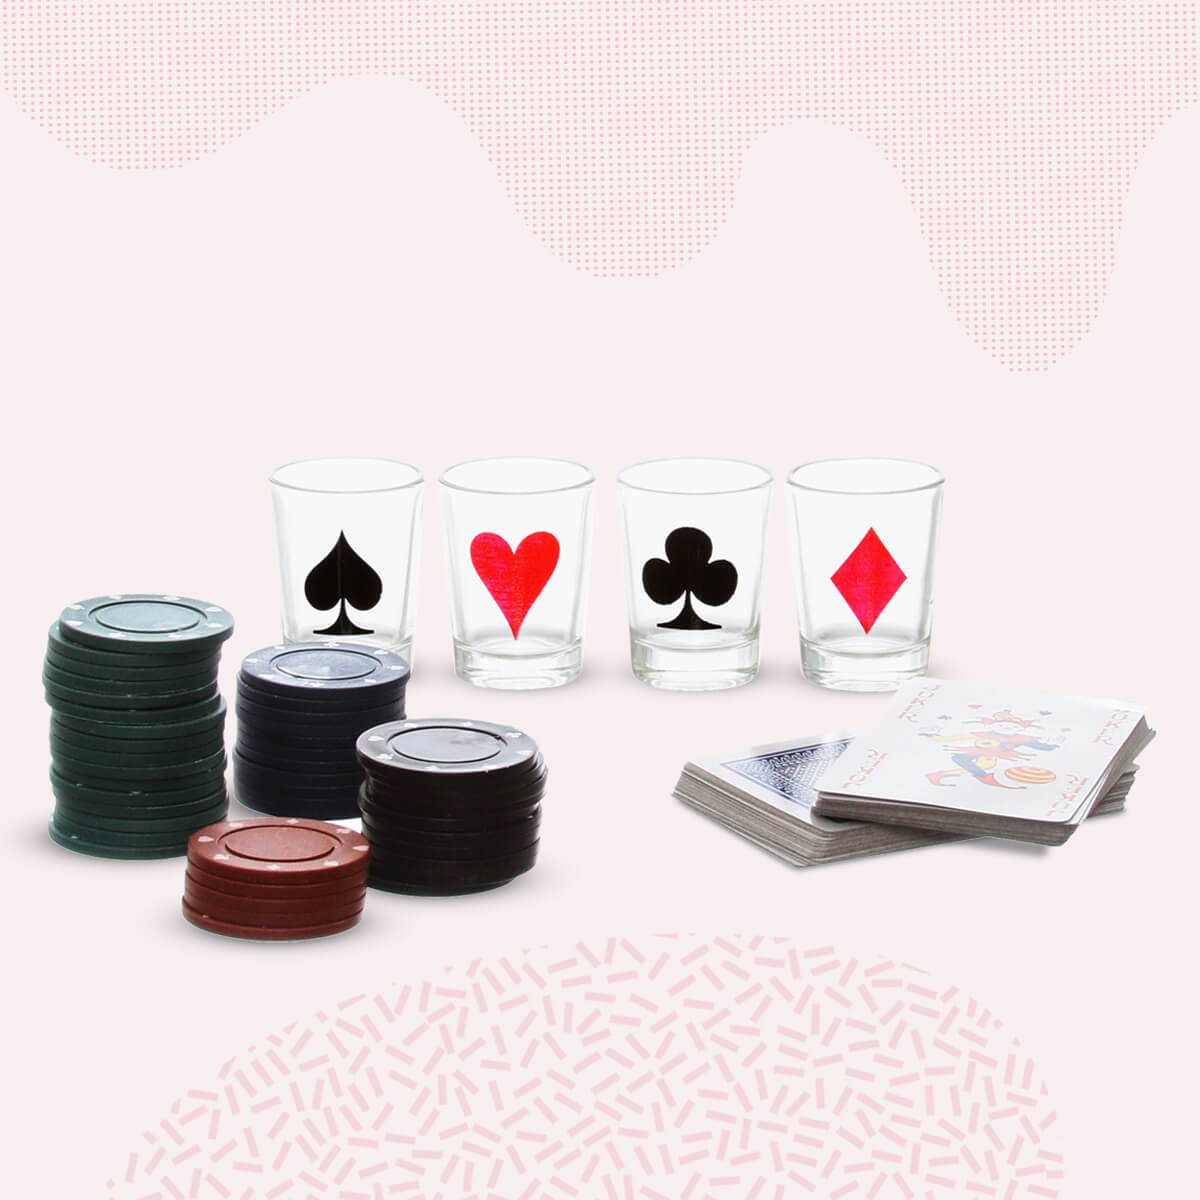 Poker - Drinking game